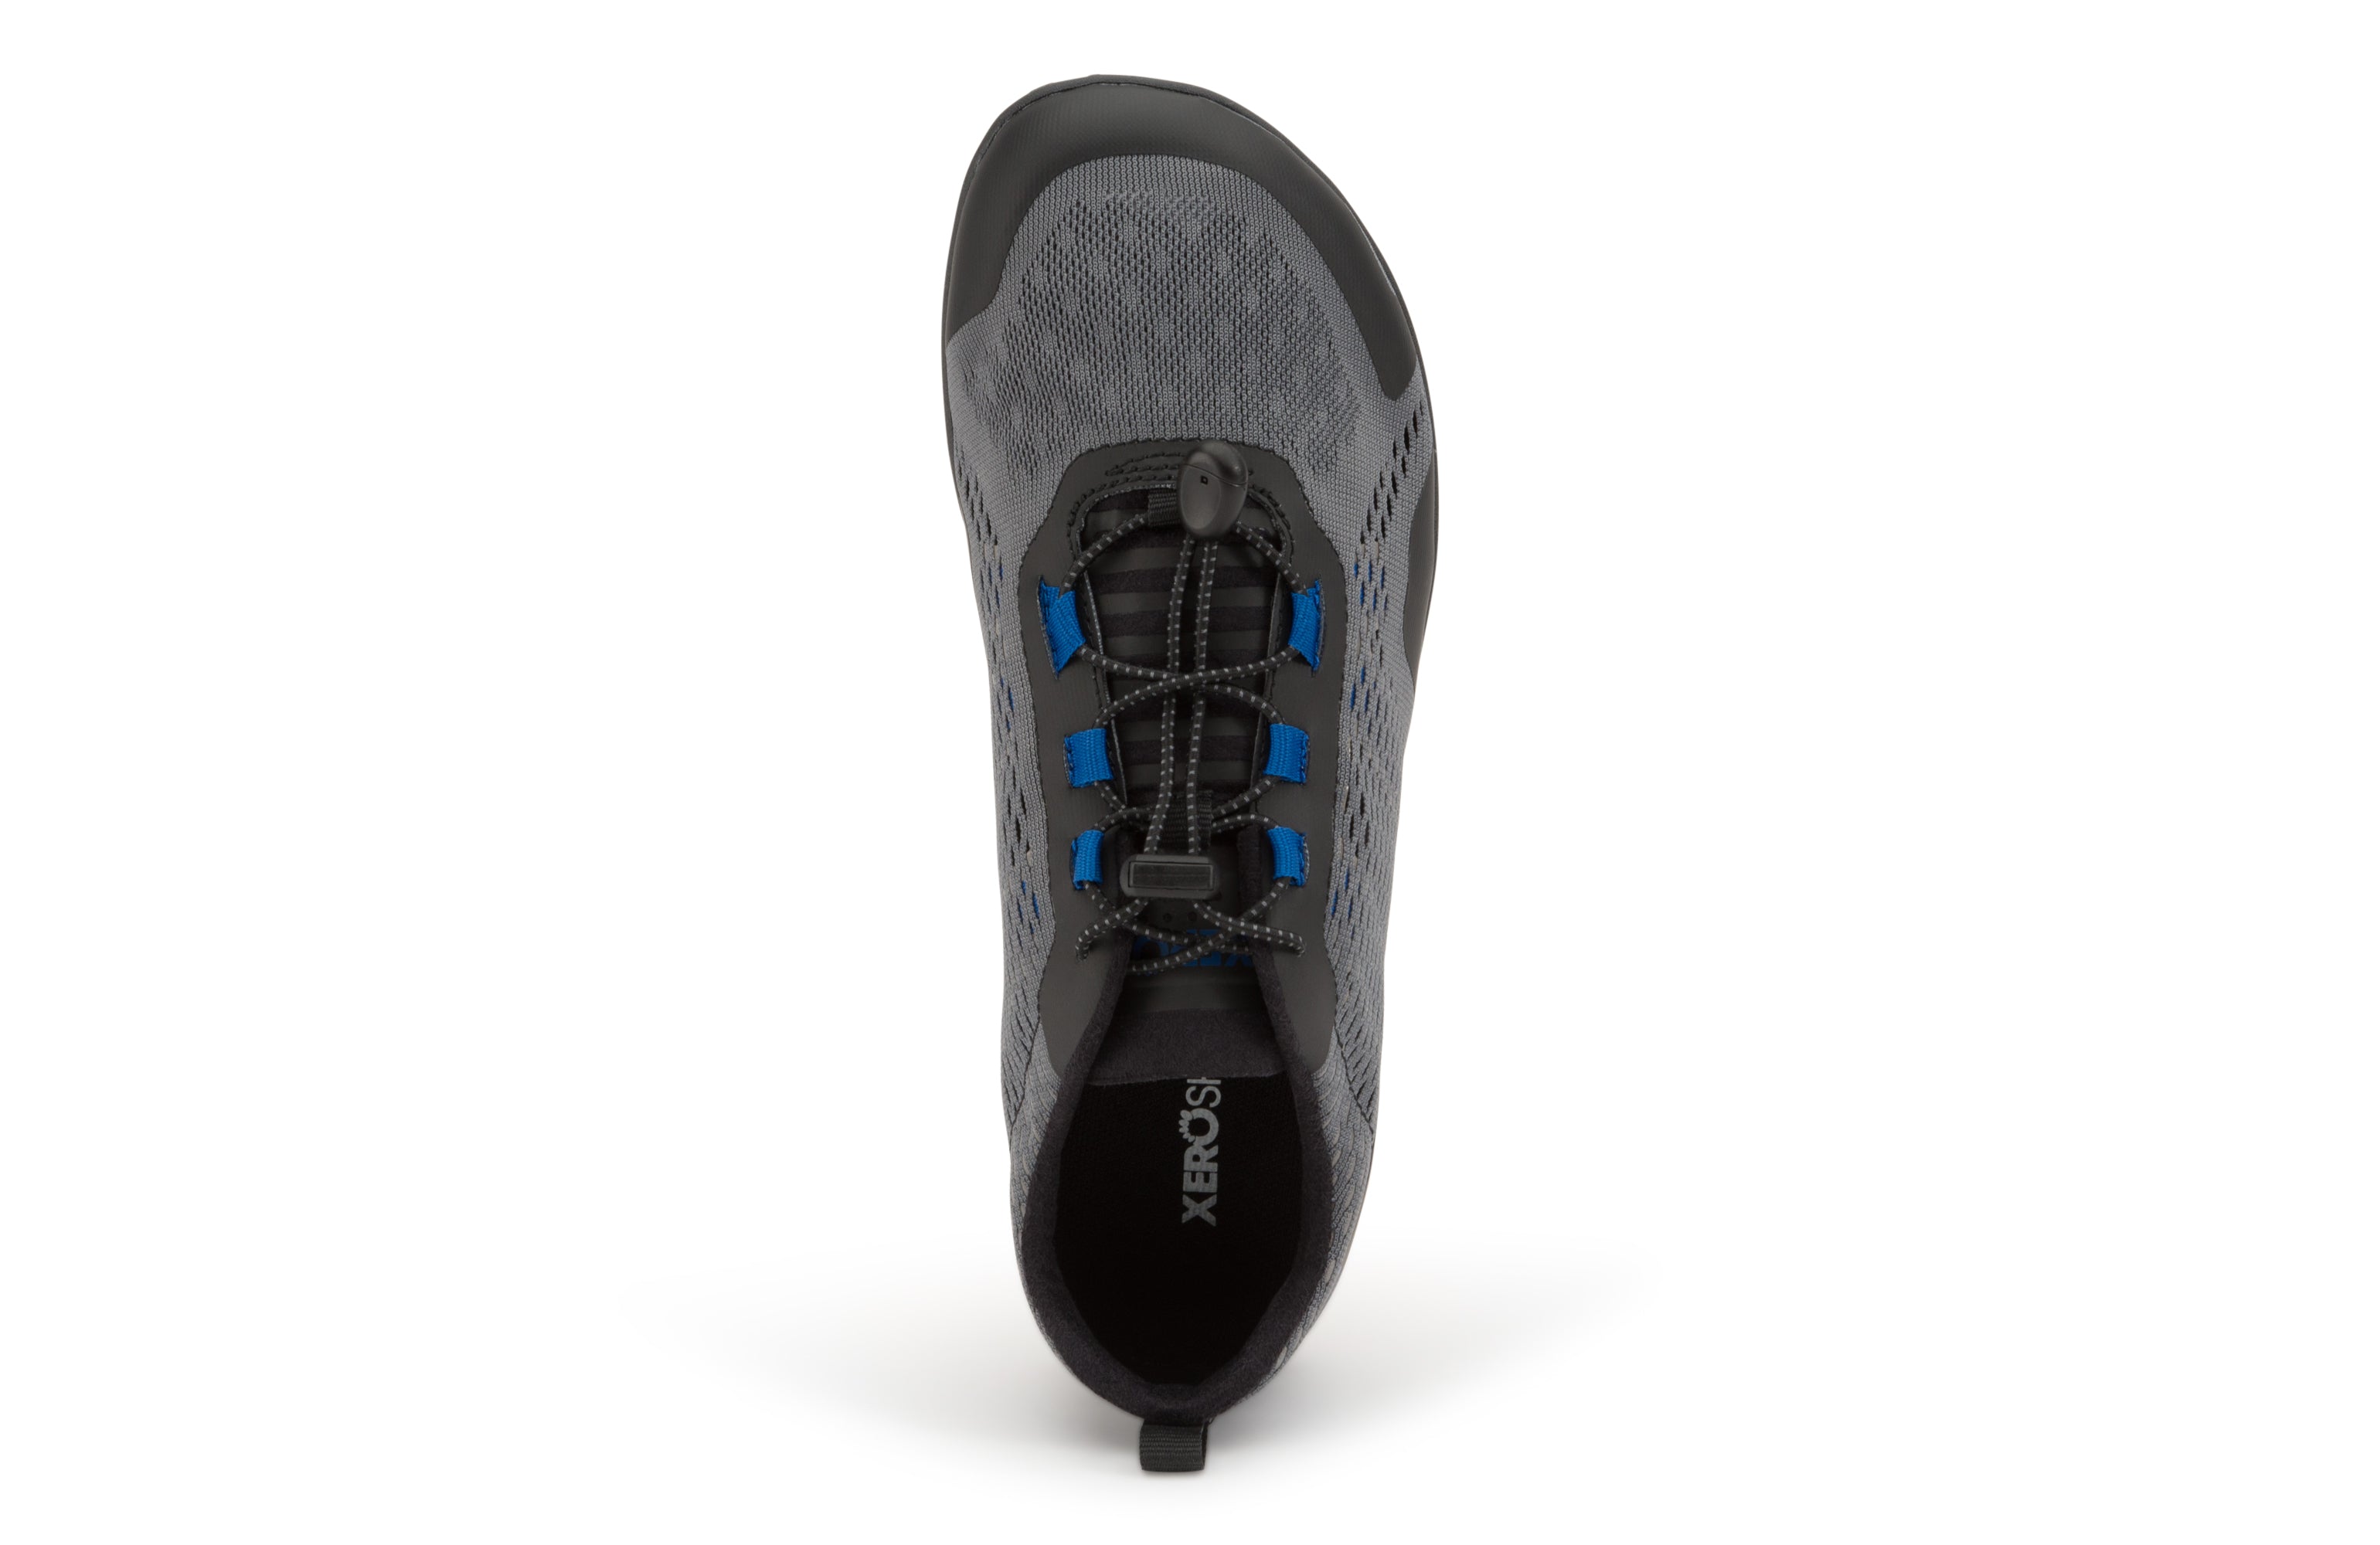 Xero Shoes Aqua X Sport barfods vand træningssko til mænd i farven steel gray / blue, top